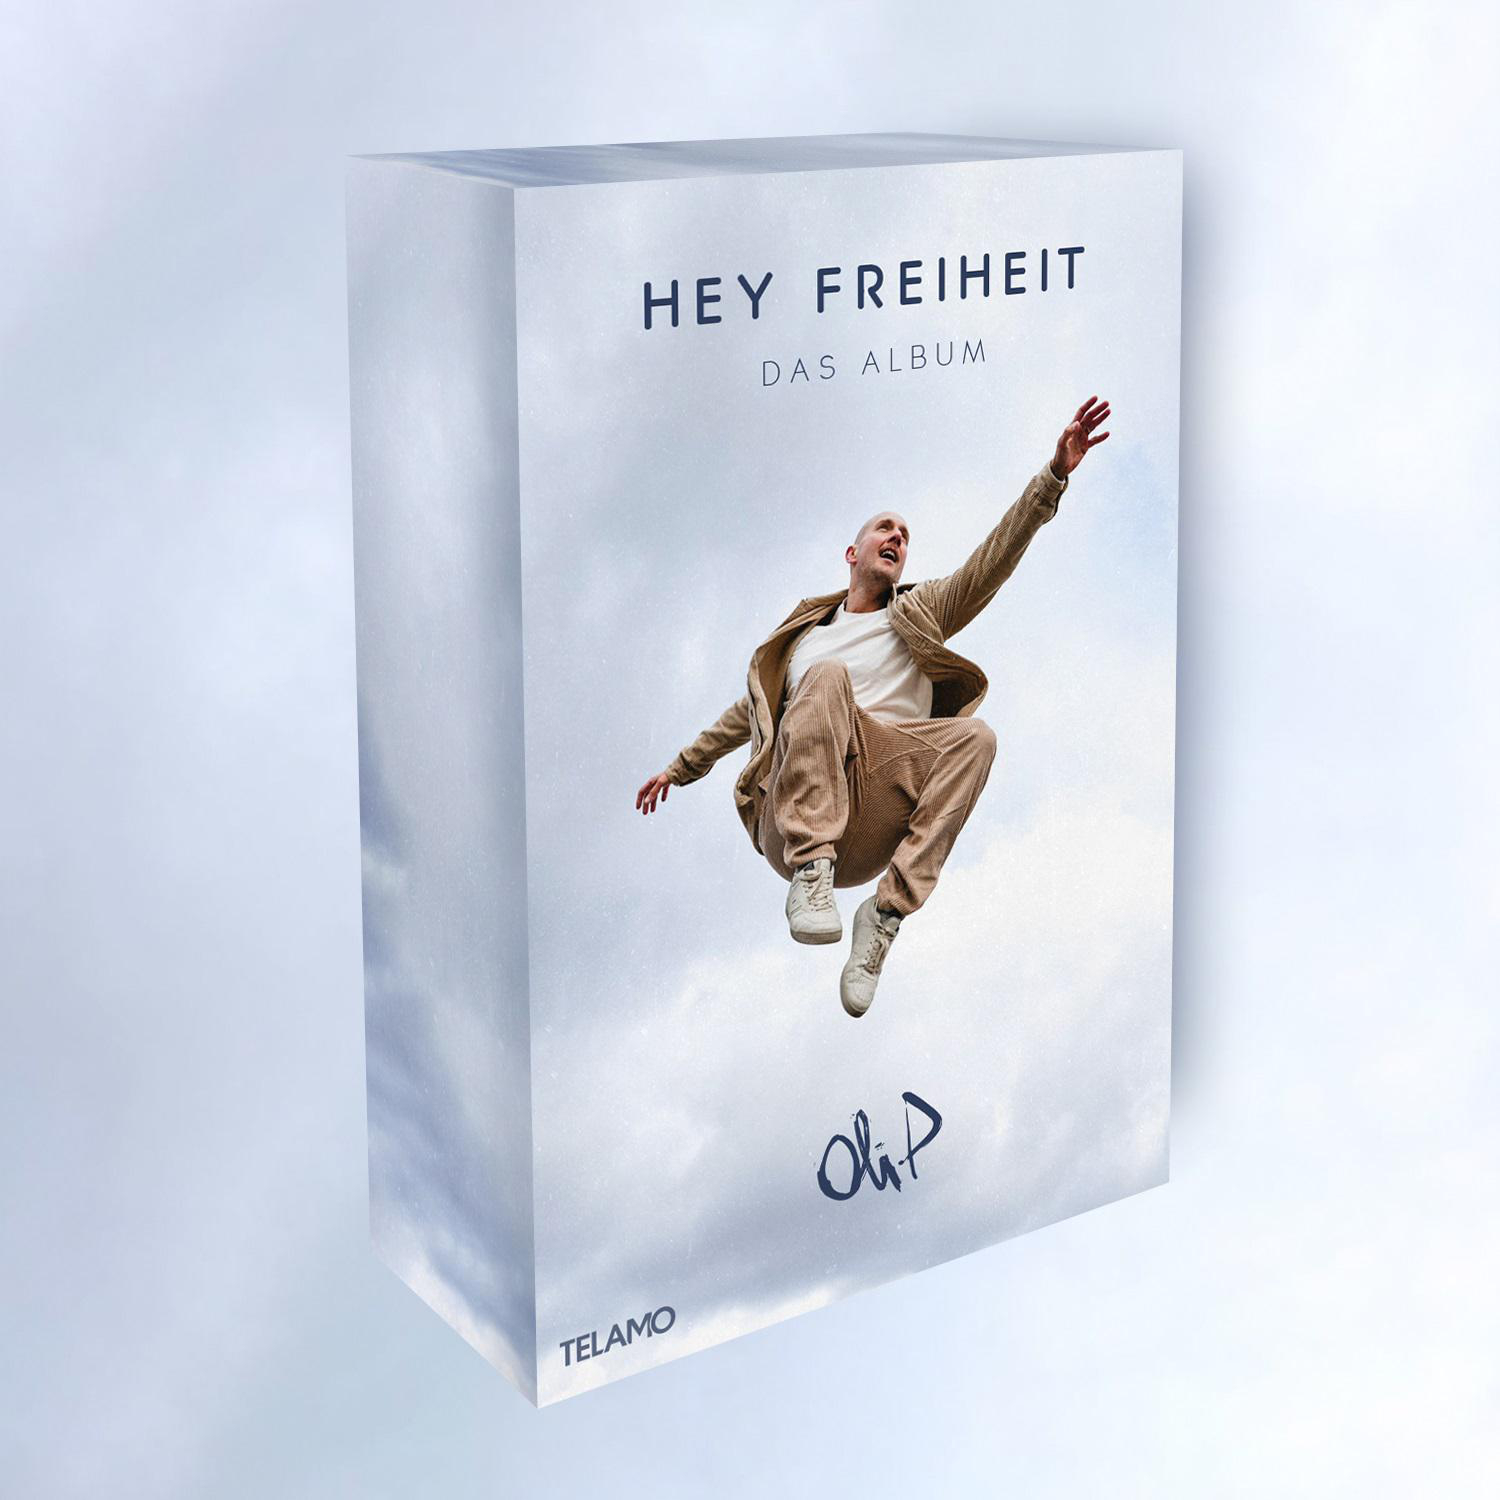 (CD Fanbox Merchandising) Oli.P - Album(Ltd. Hey Freiheit-Das Edition) - +